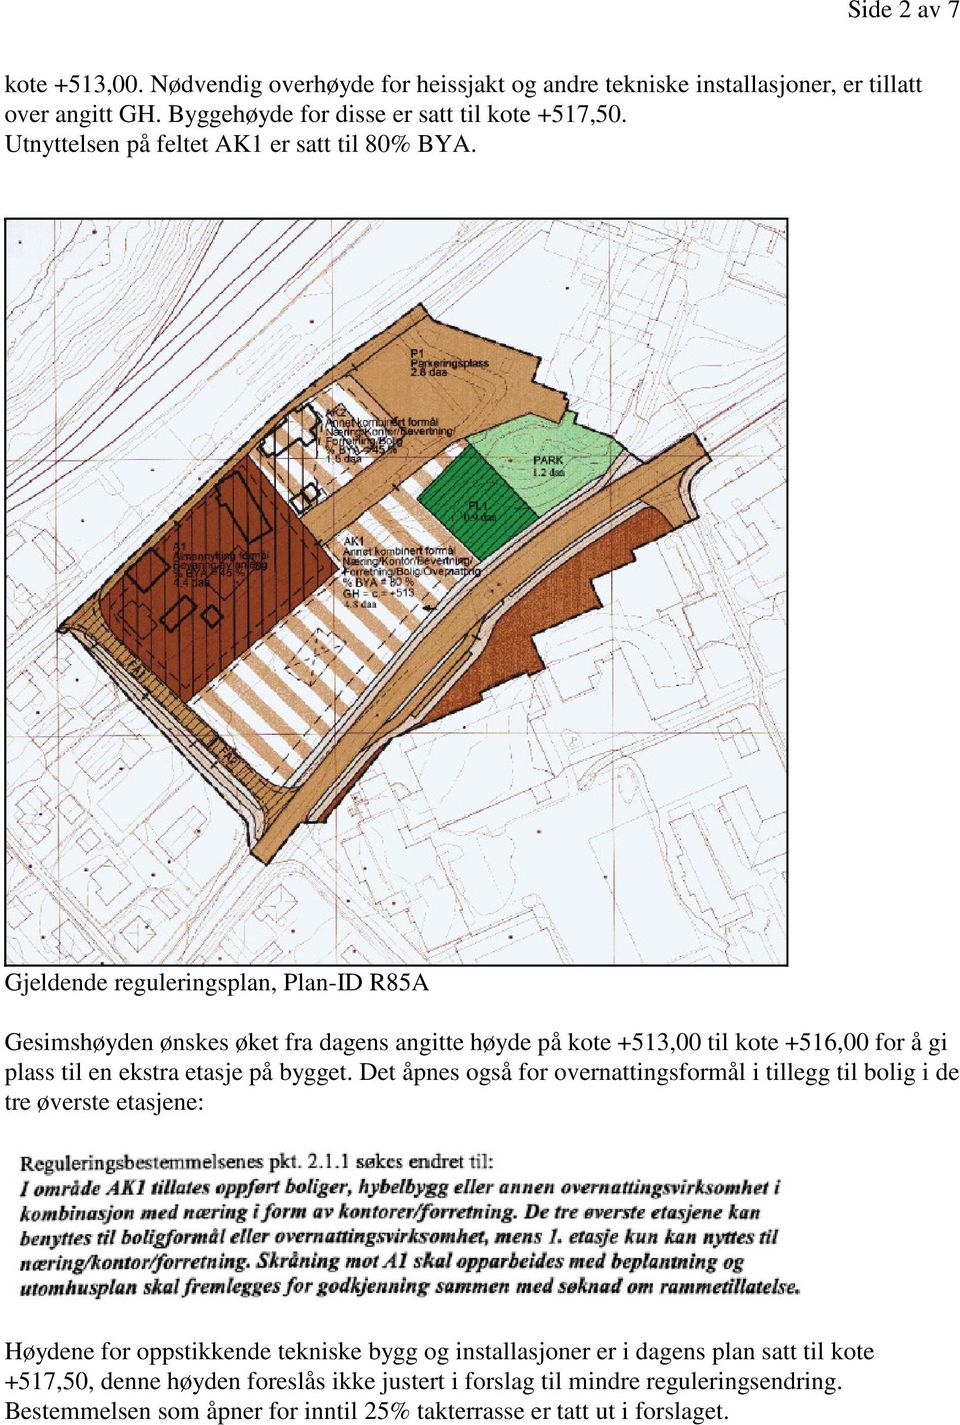 Gjeldende reguleringsplan, Plan-ID R85A Gesimshøyden ønskes øket fra dagens angitte høyde på kote +513,00 til kote +516,00 for å gi plass til en ekstra etasje på bygget.